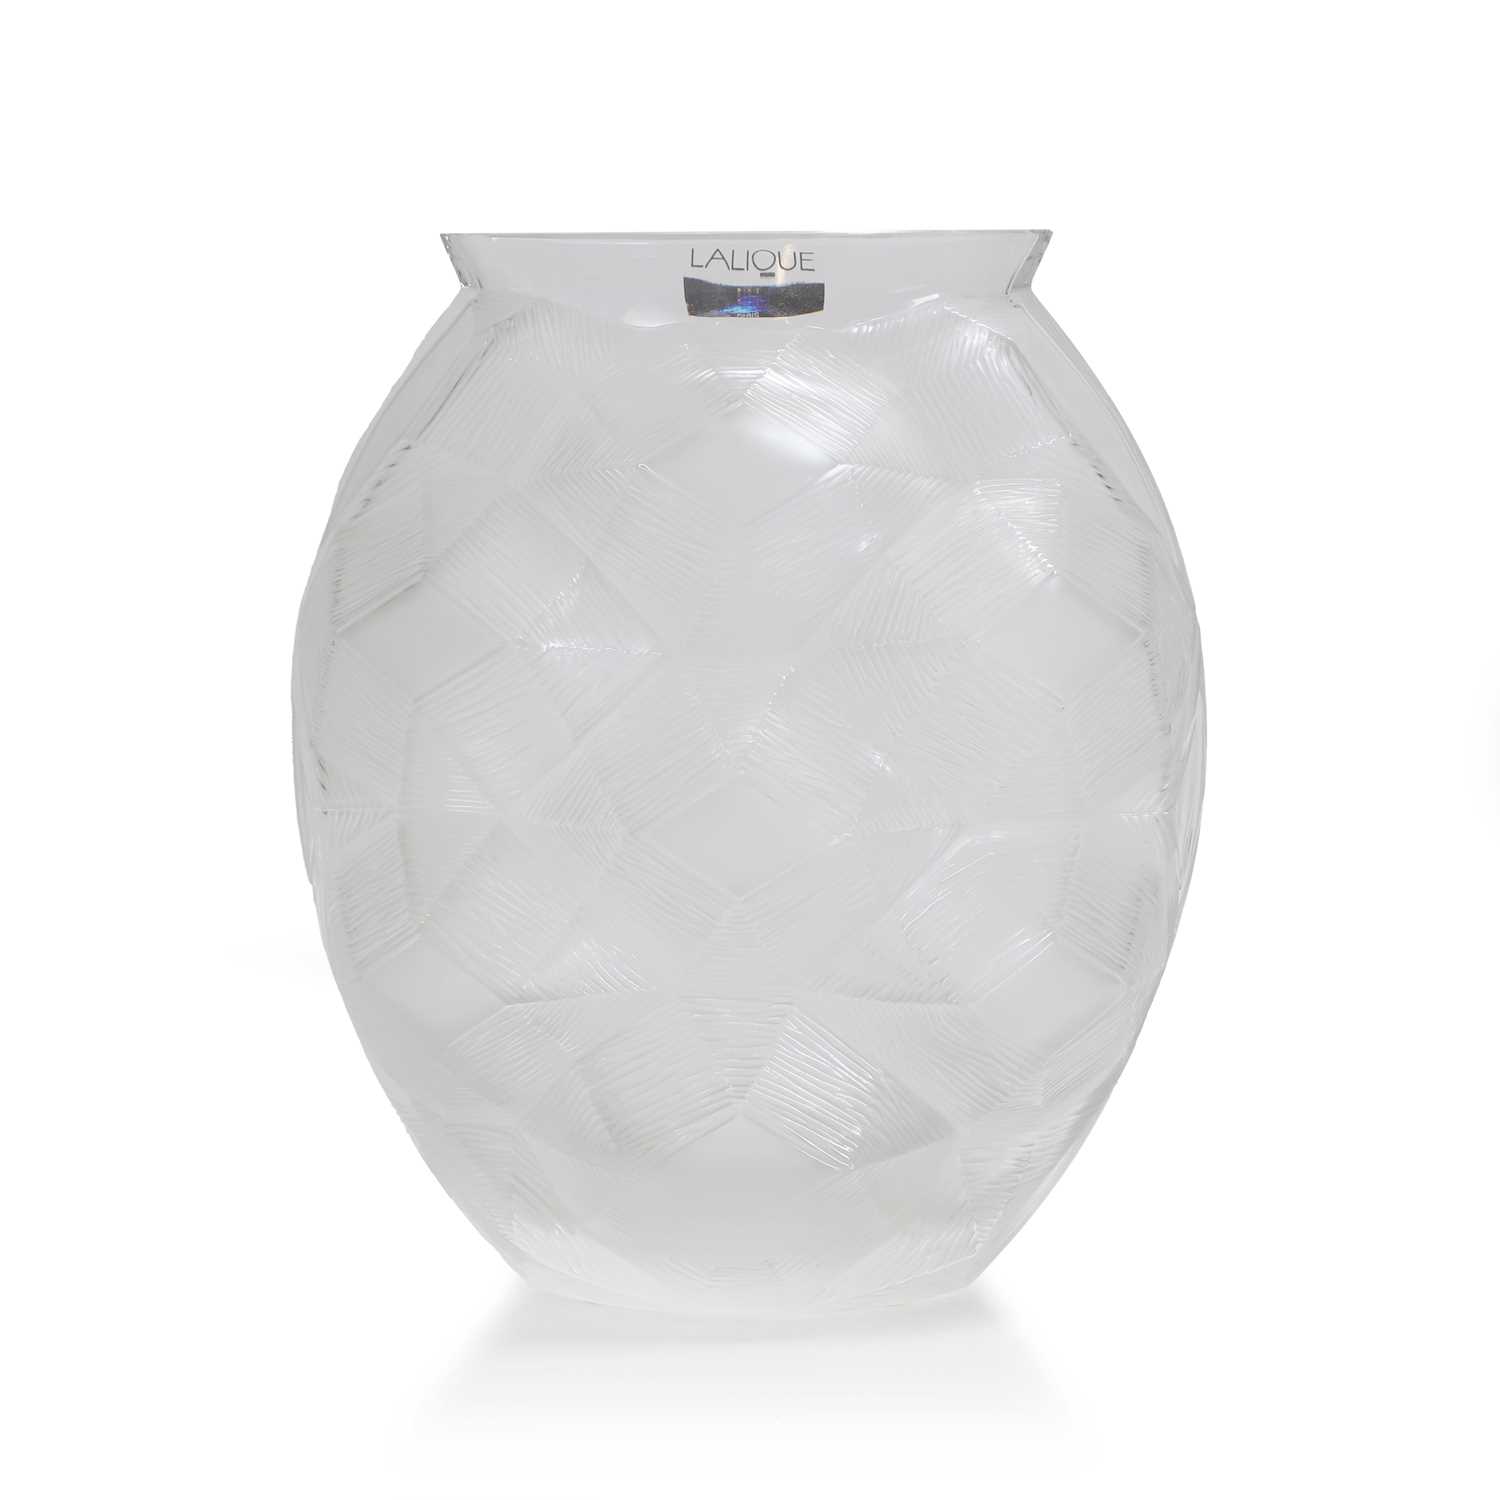 Lot 61 - A Lalique 'Tortue' glass vase